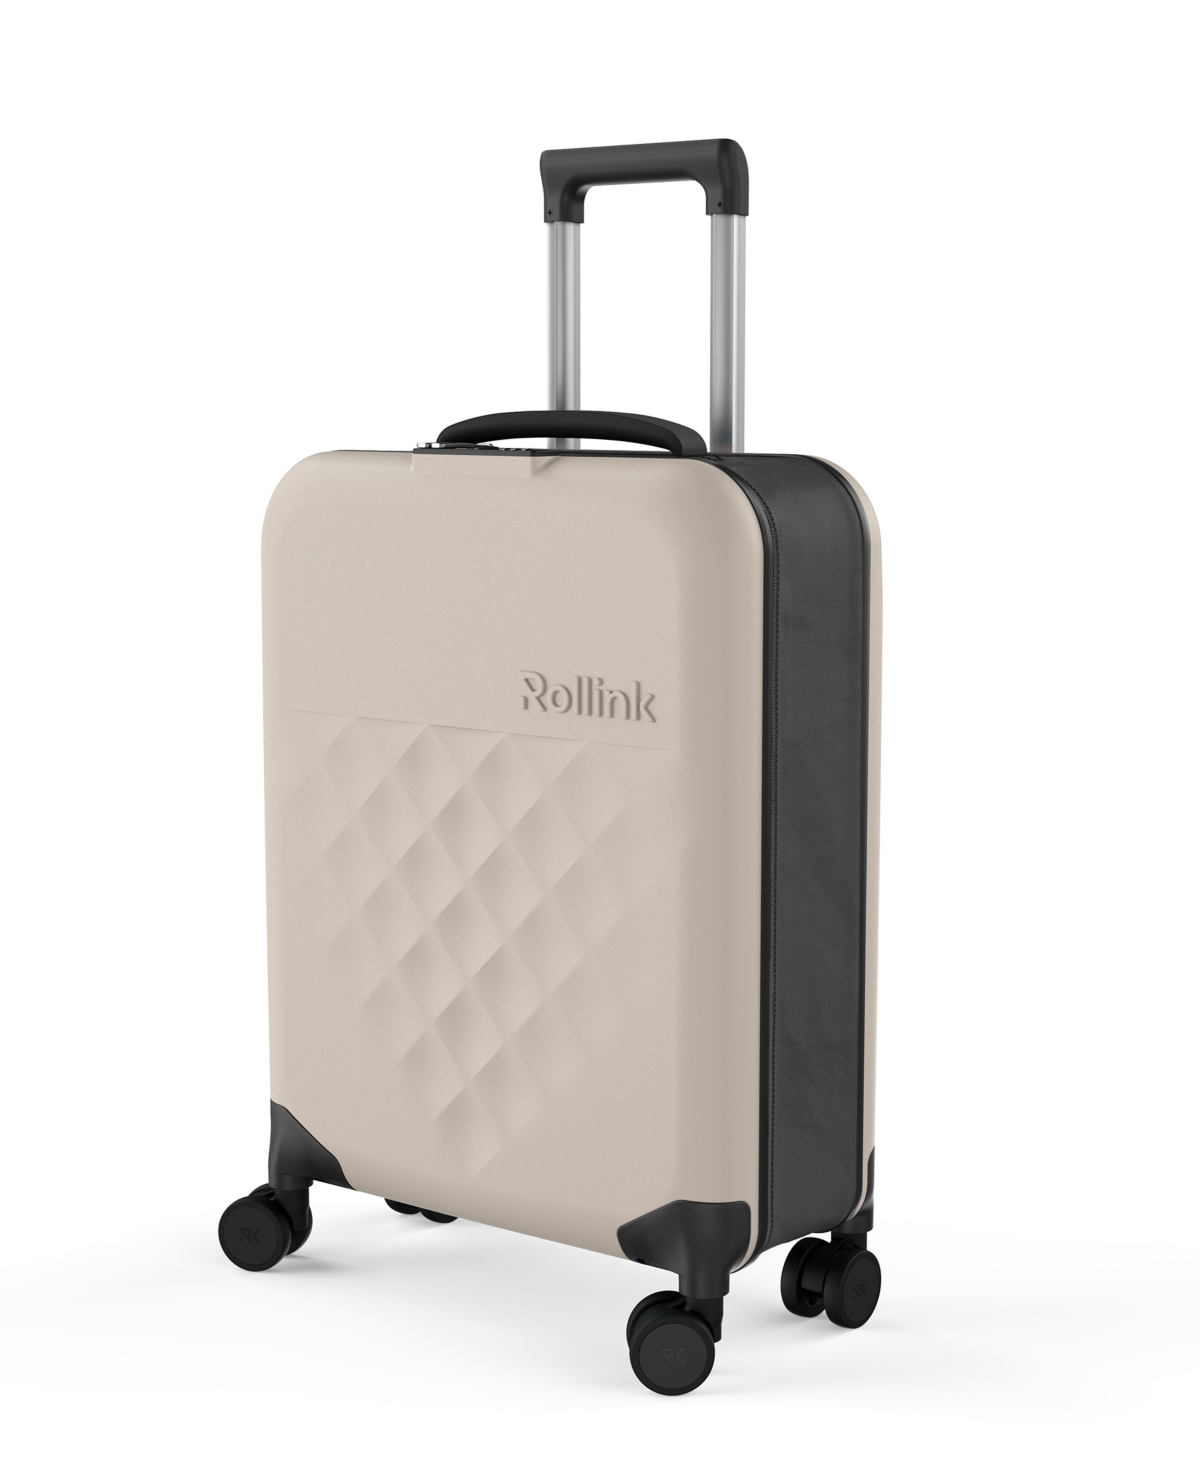 Rollink Flex 360 International 21" Carry-on Spinner Suitcase In Medium Beige